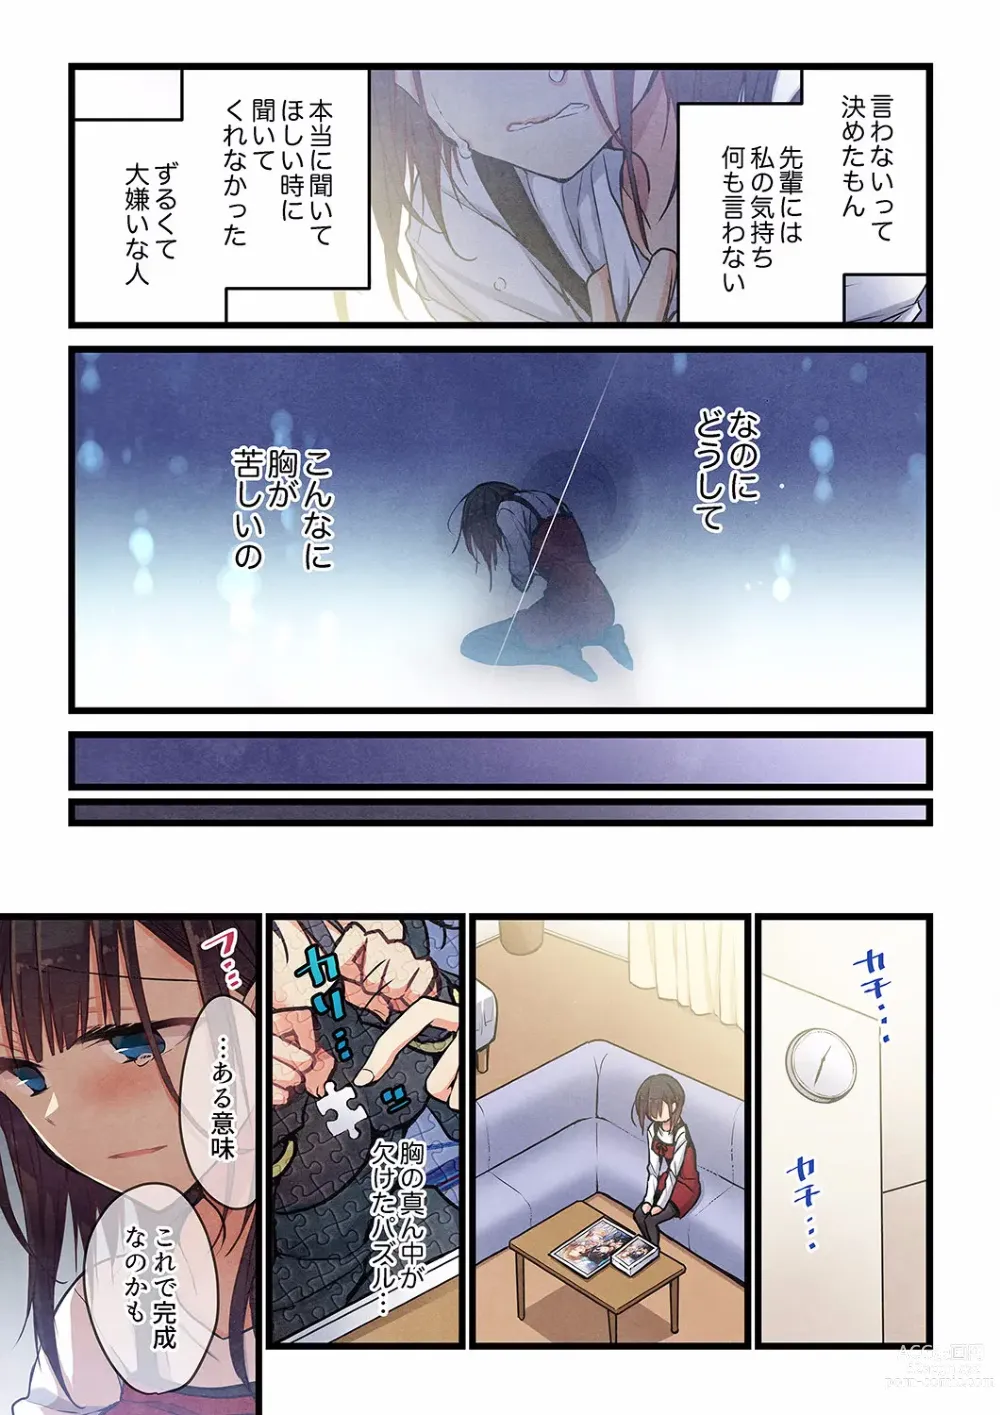 Page 21 of manga Kimi ga Sore o Ai to Yonde mo - Even if you call it love 29